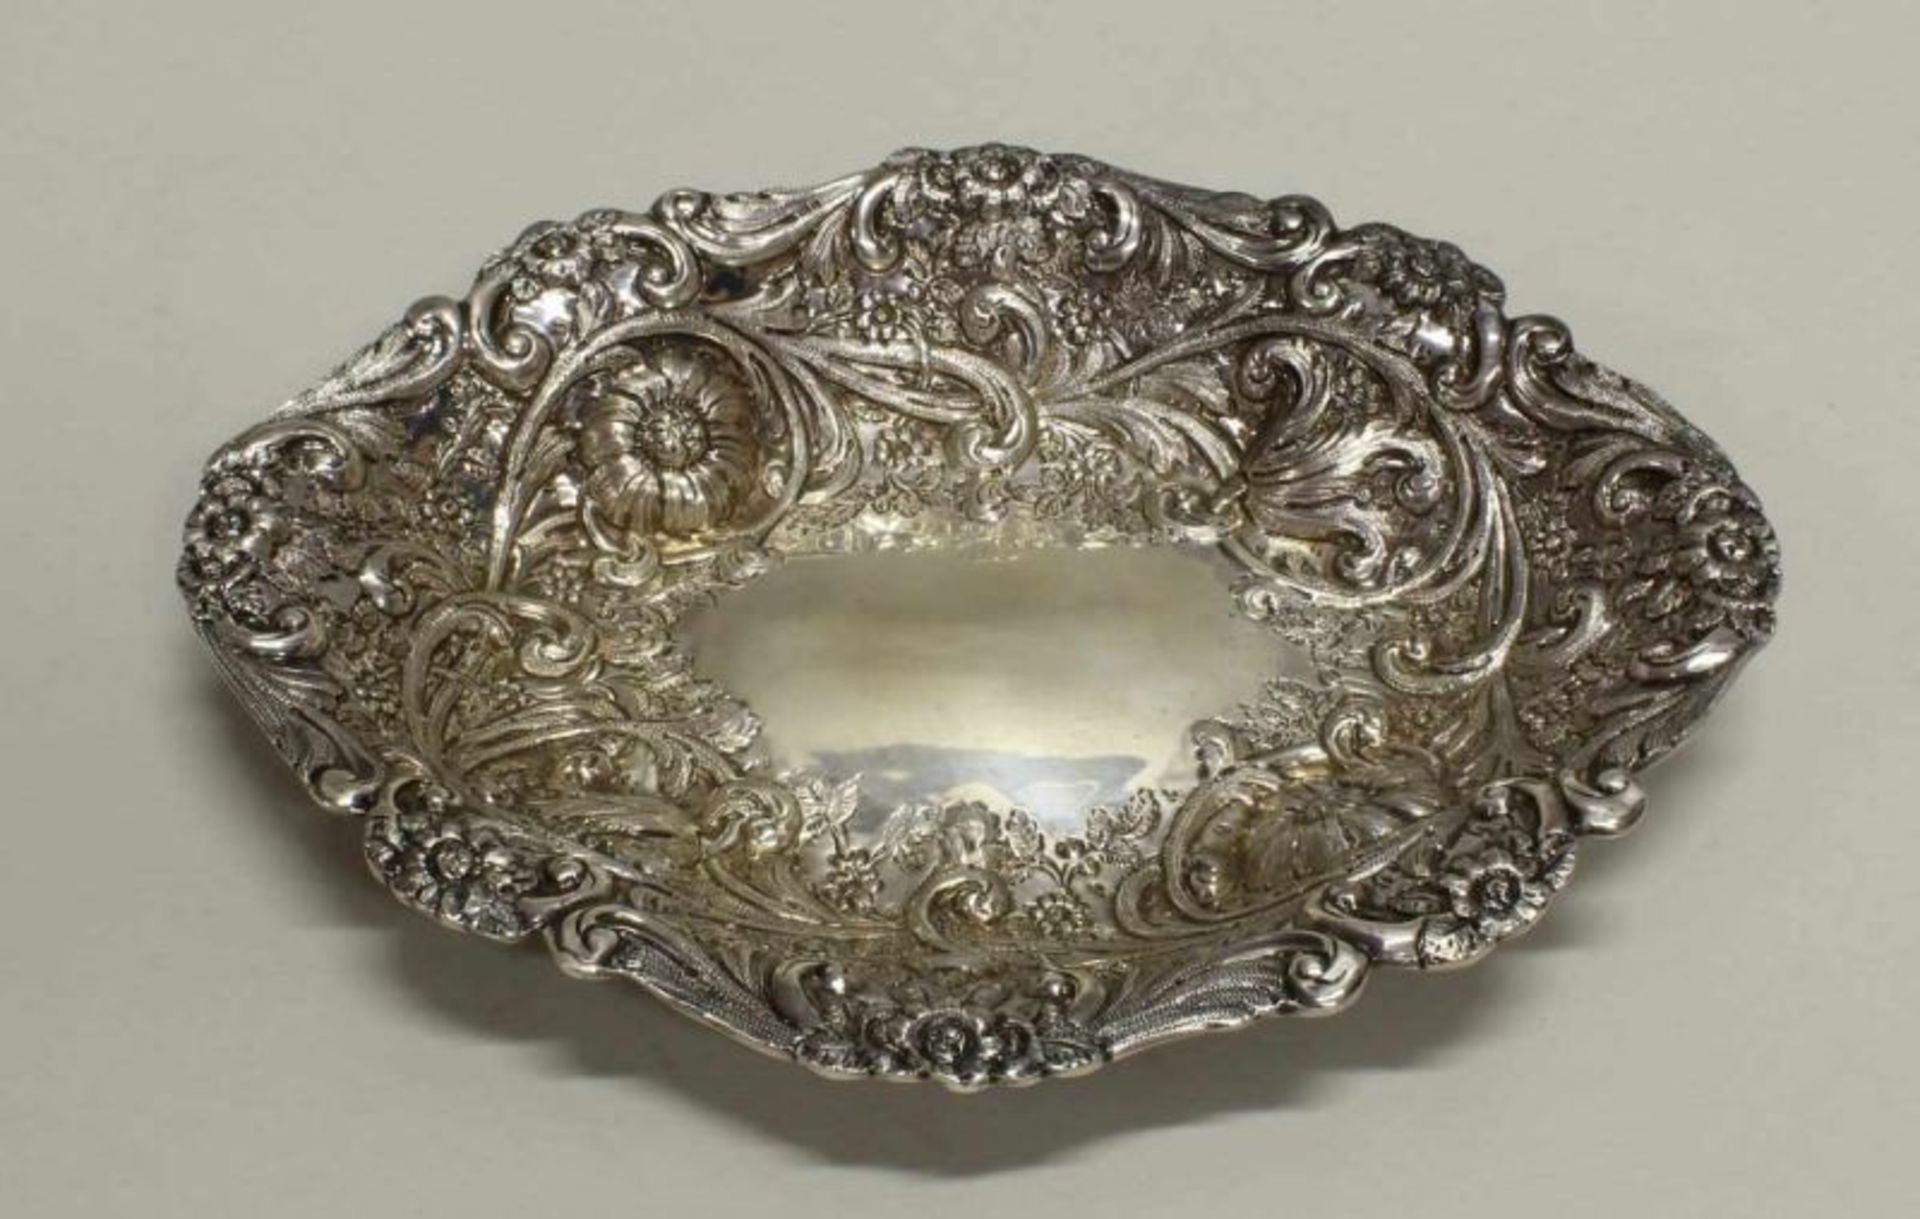 Schale, Silber 925, London, 1895, Goldsmiths & Silversmiths Co., floraler Reliefdekor, umseitig